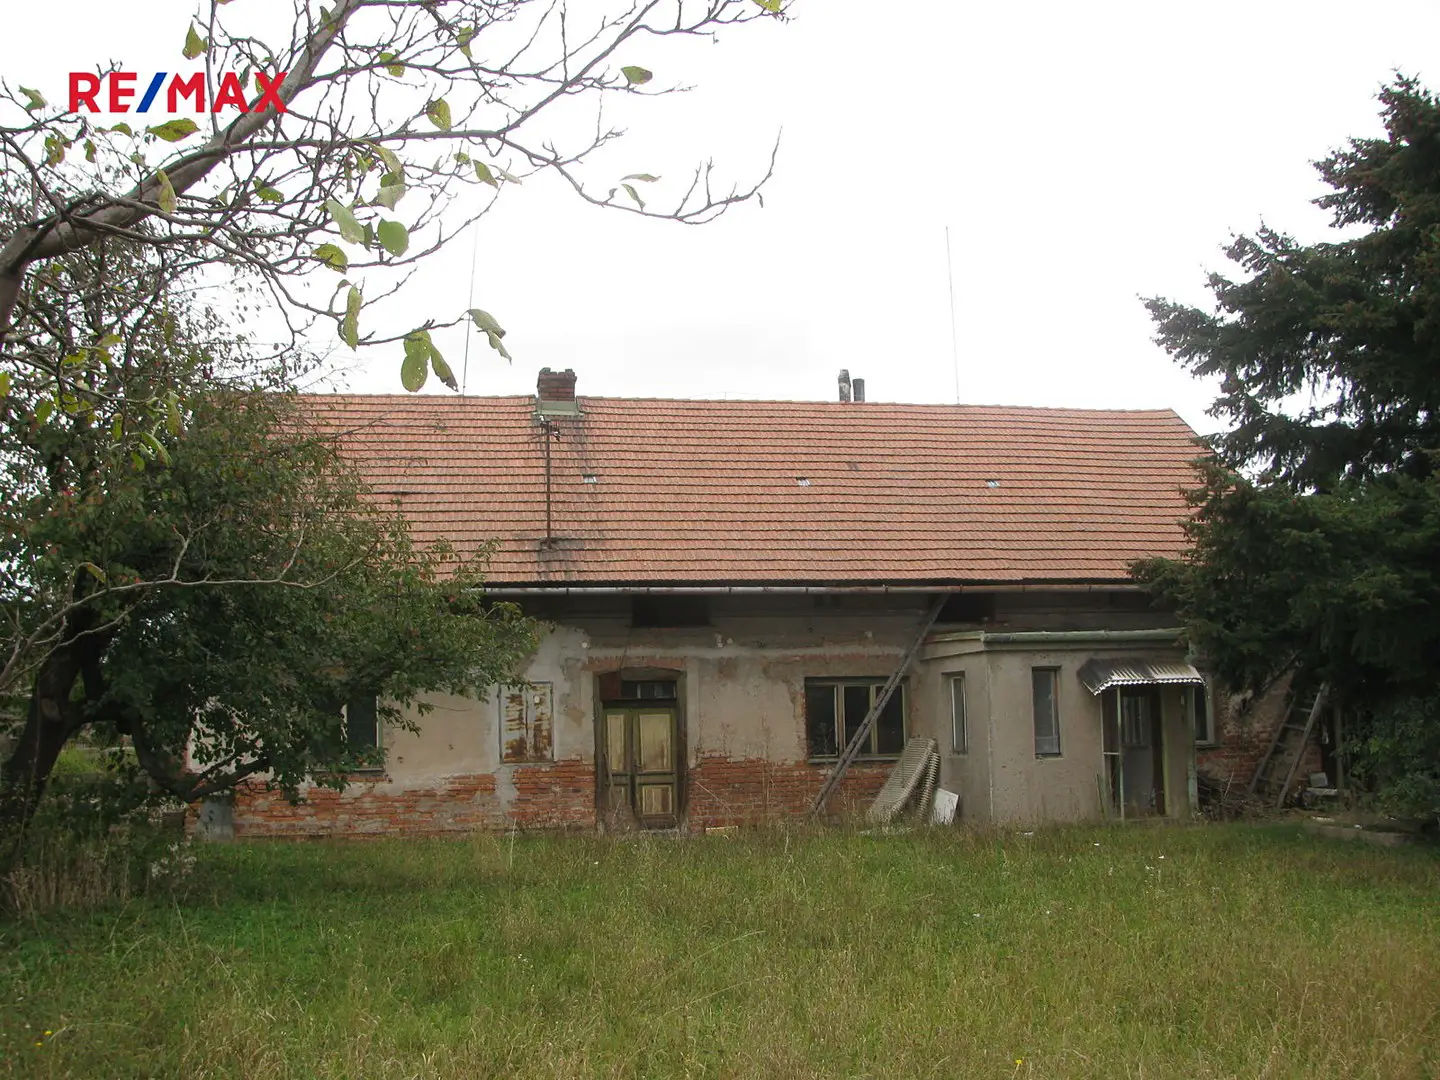 Prodej  rodinného domu 150 m², pozemek 3 470 m², Voleč, okres Pardubice